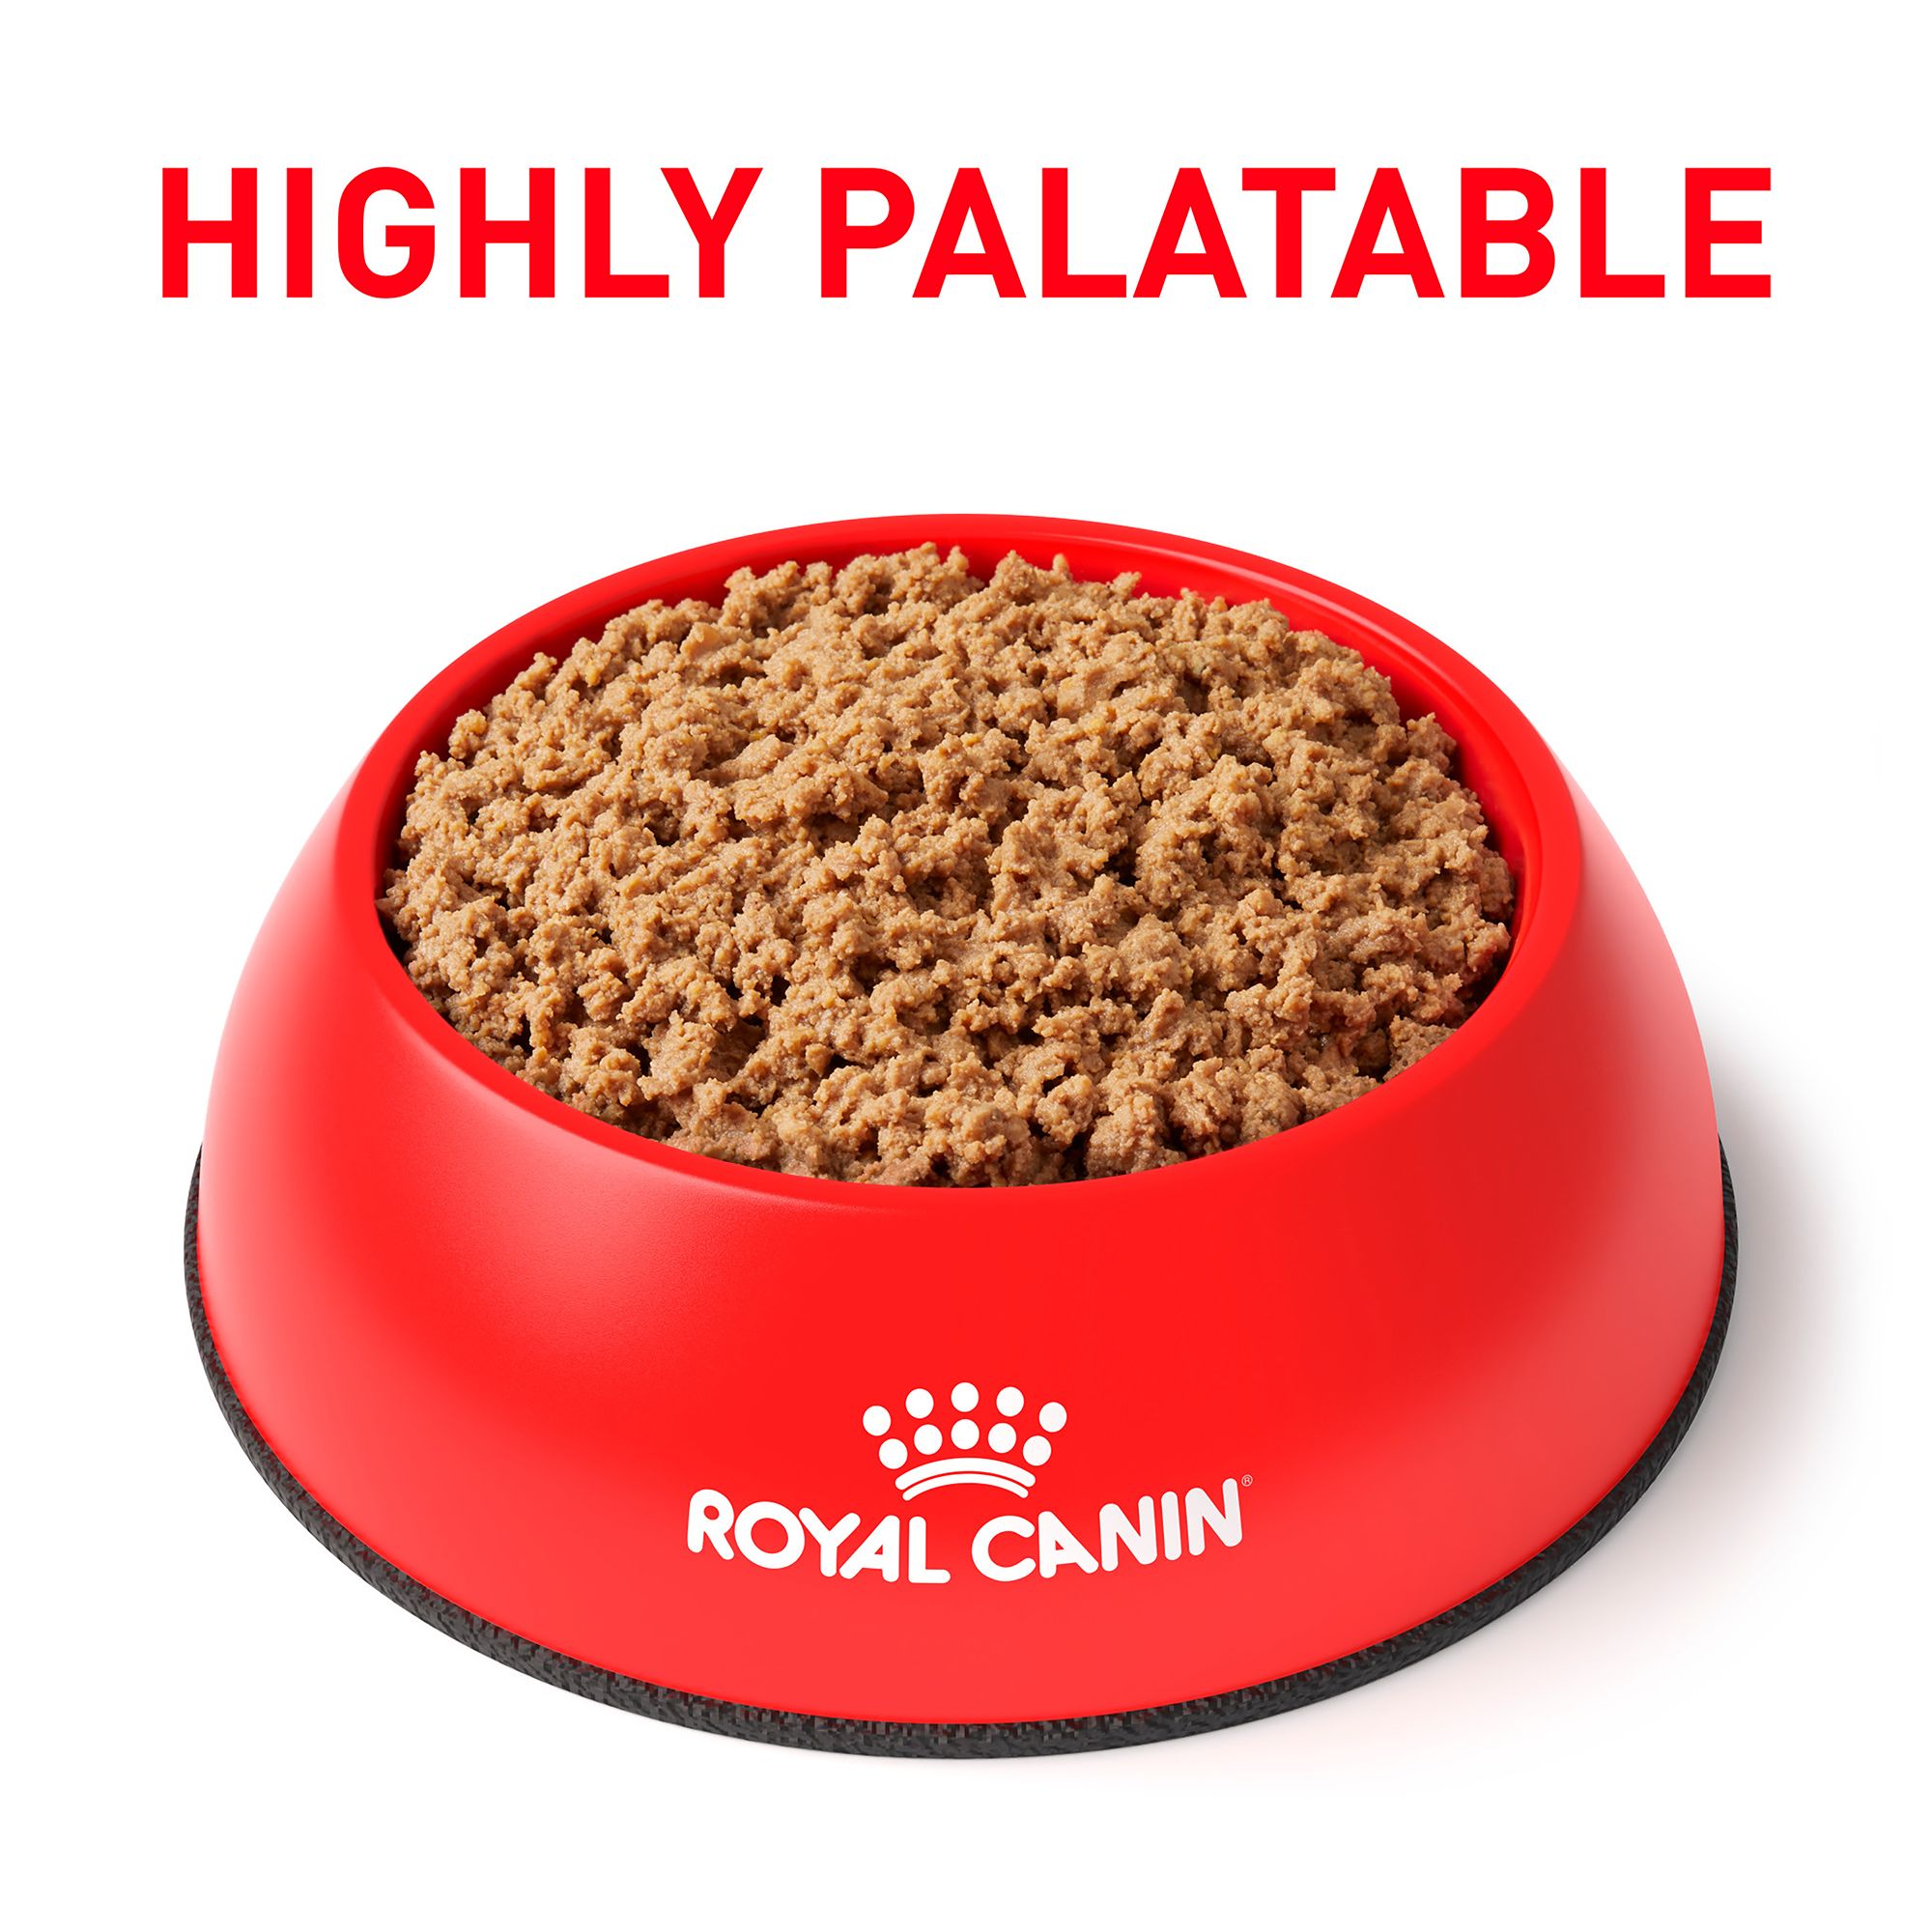 royal canin ingredient